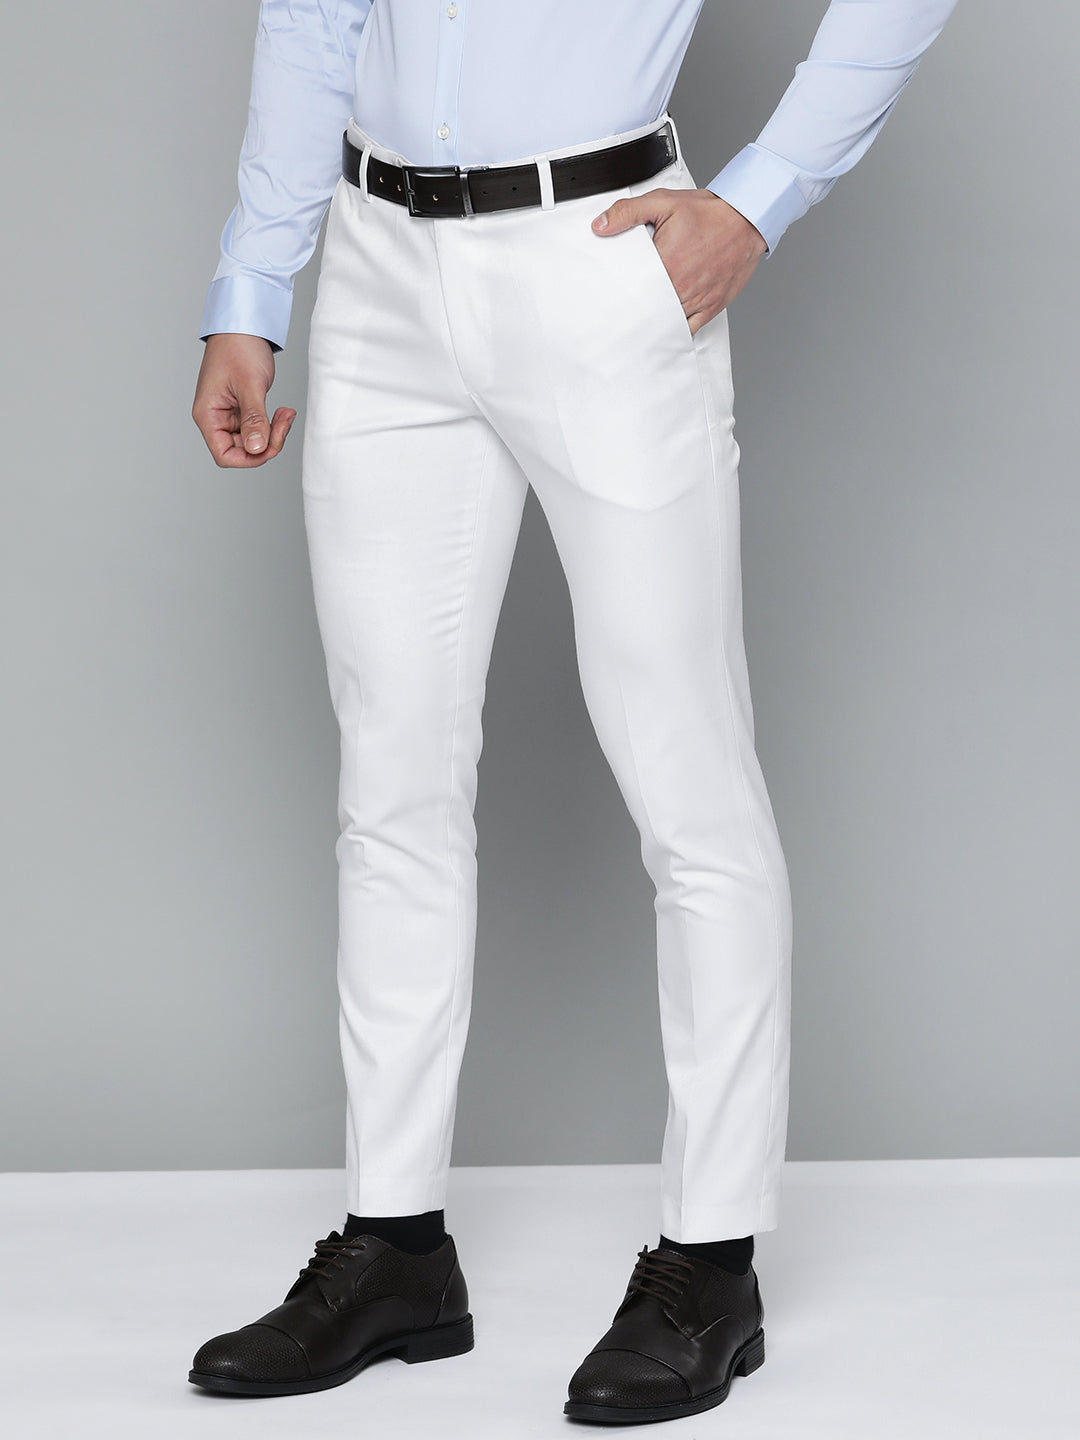 Modern School  White Trousers for Men  Bigfanz